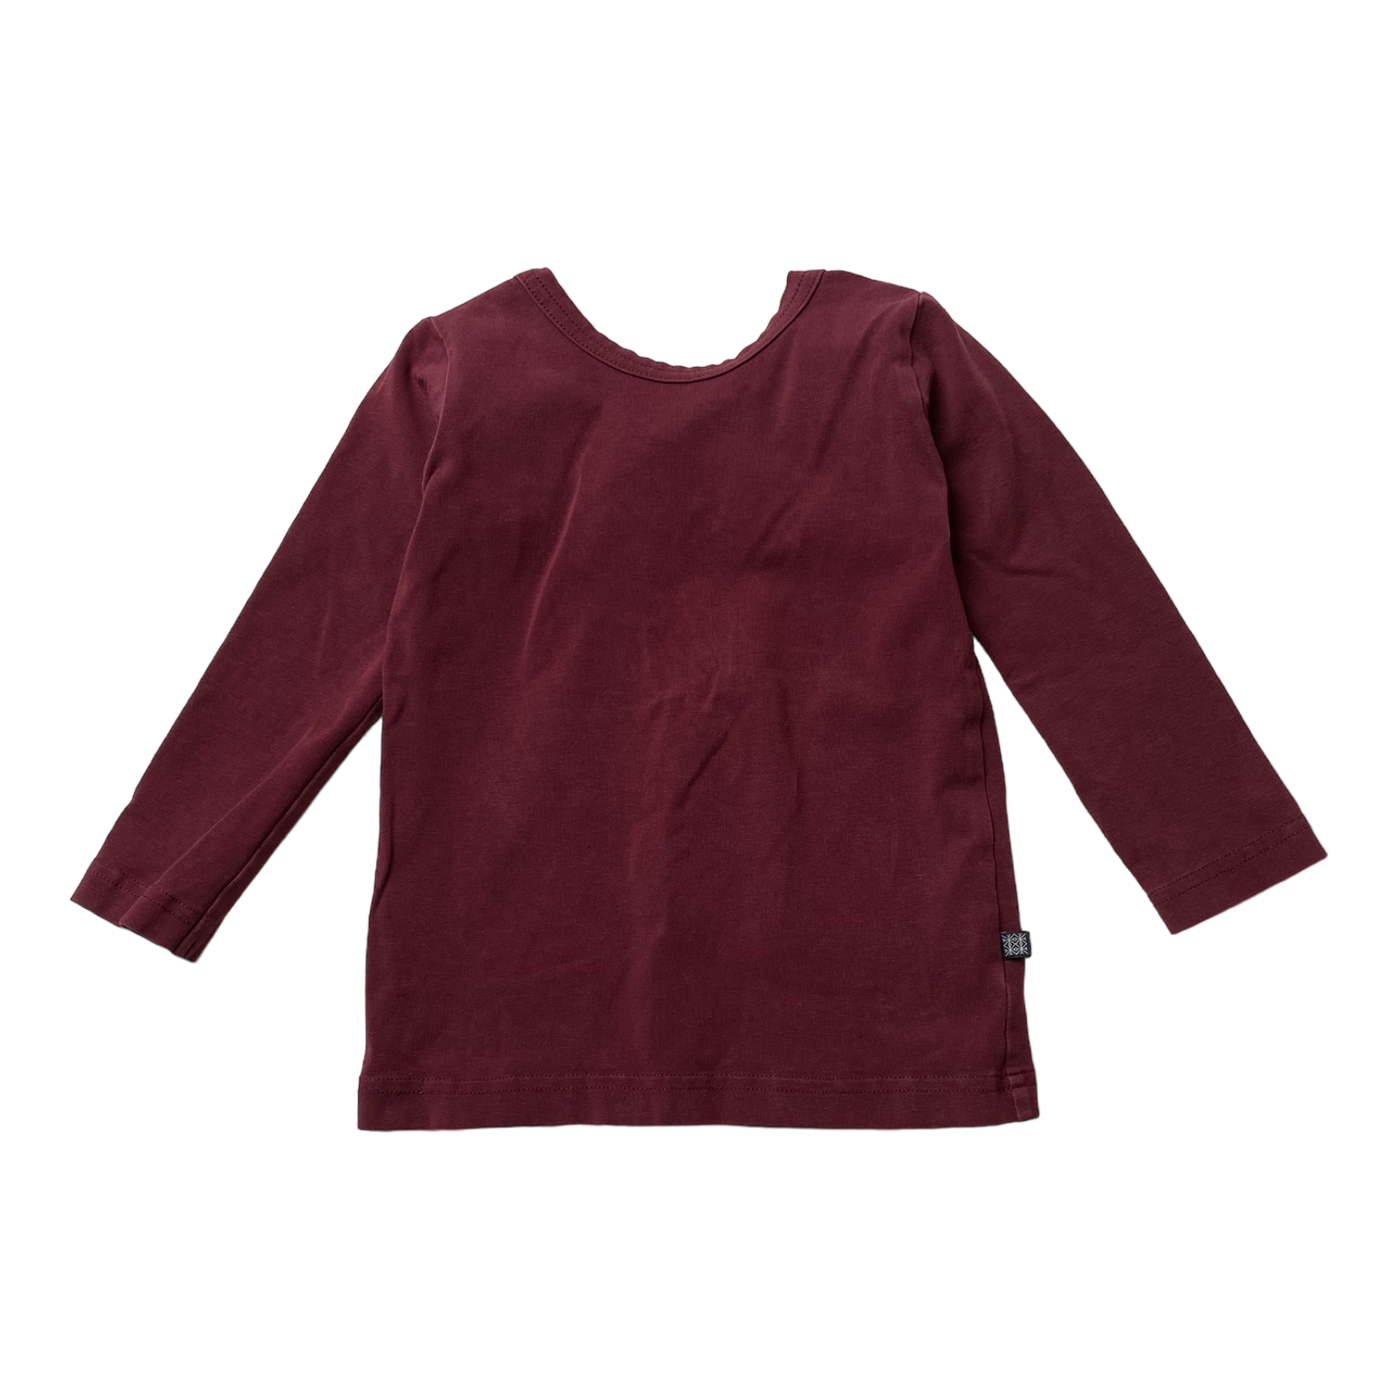 Kaiko cross shirt, wine | 86/92cm